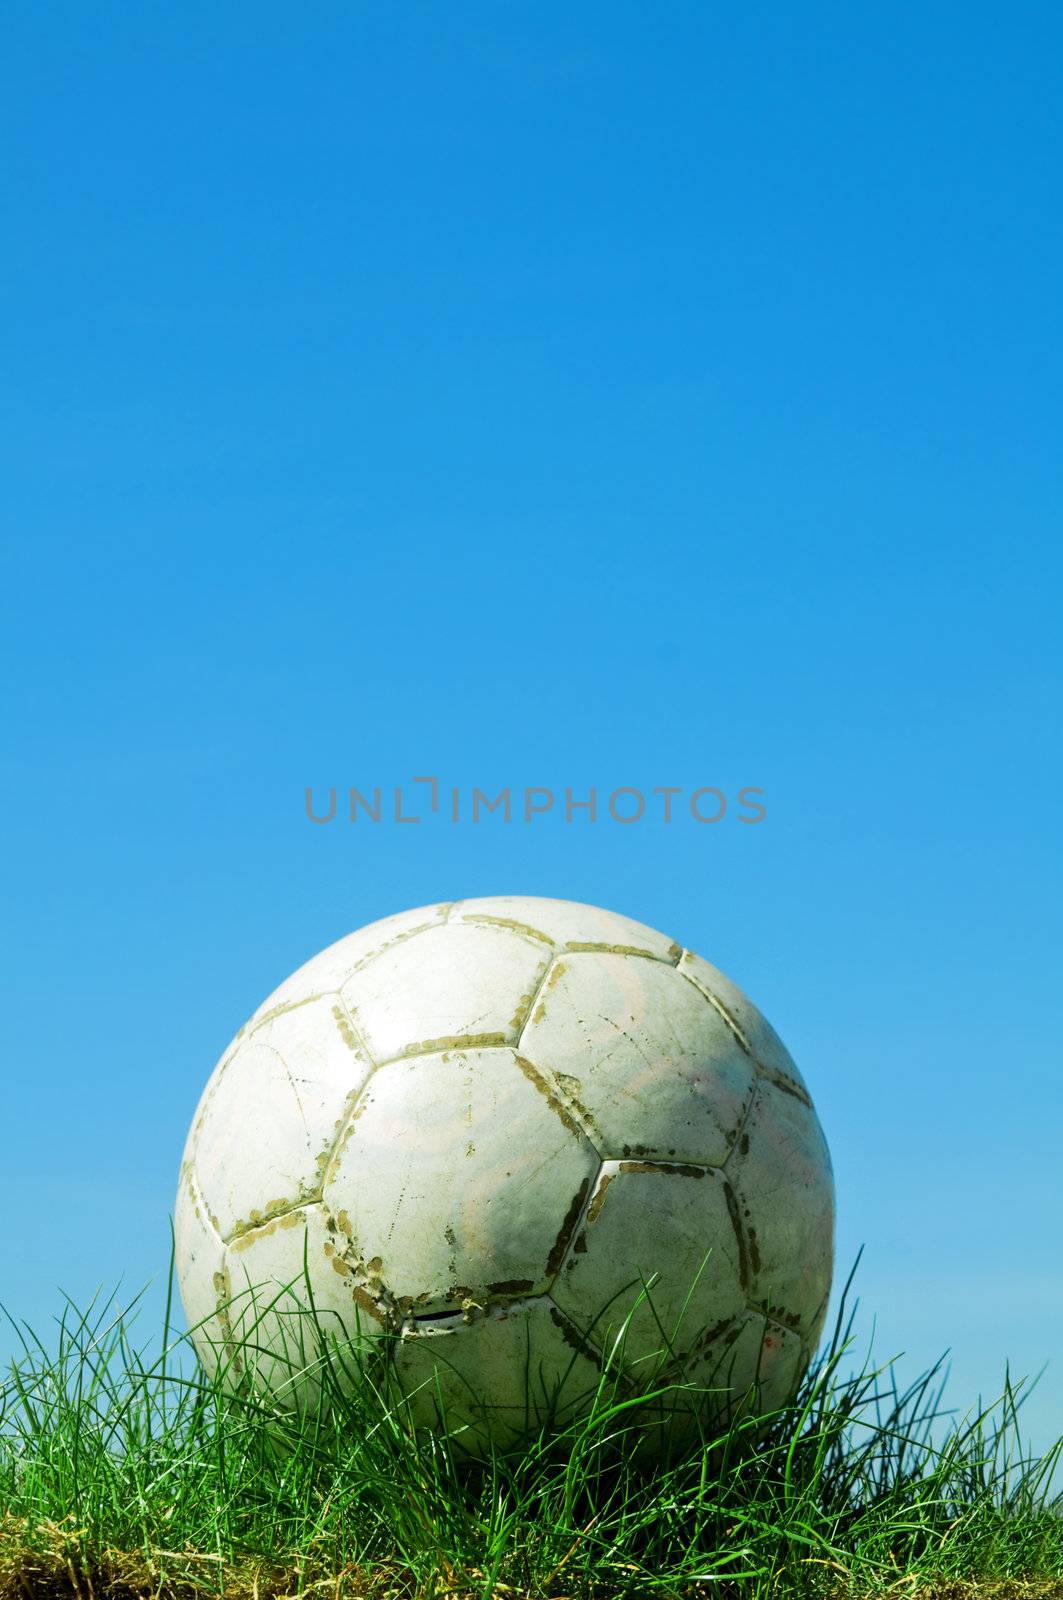 Soccer ball standing on grass